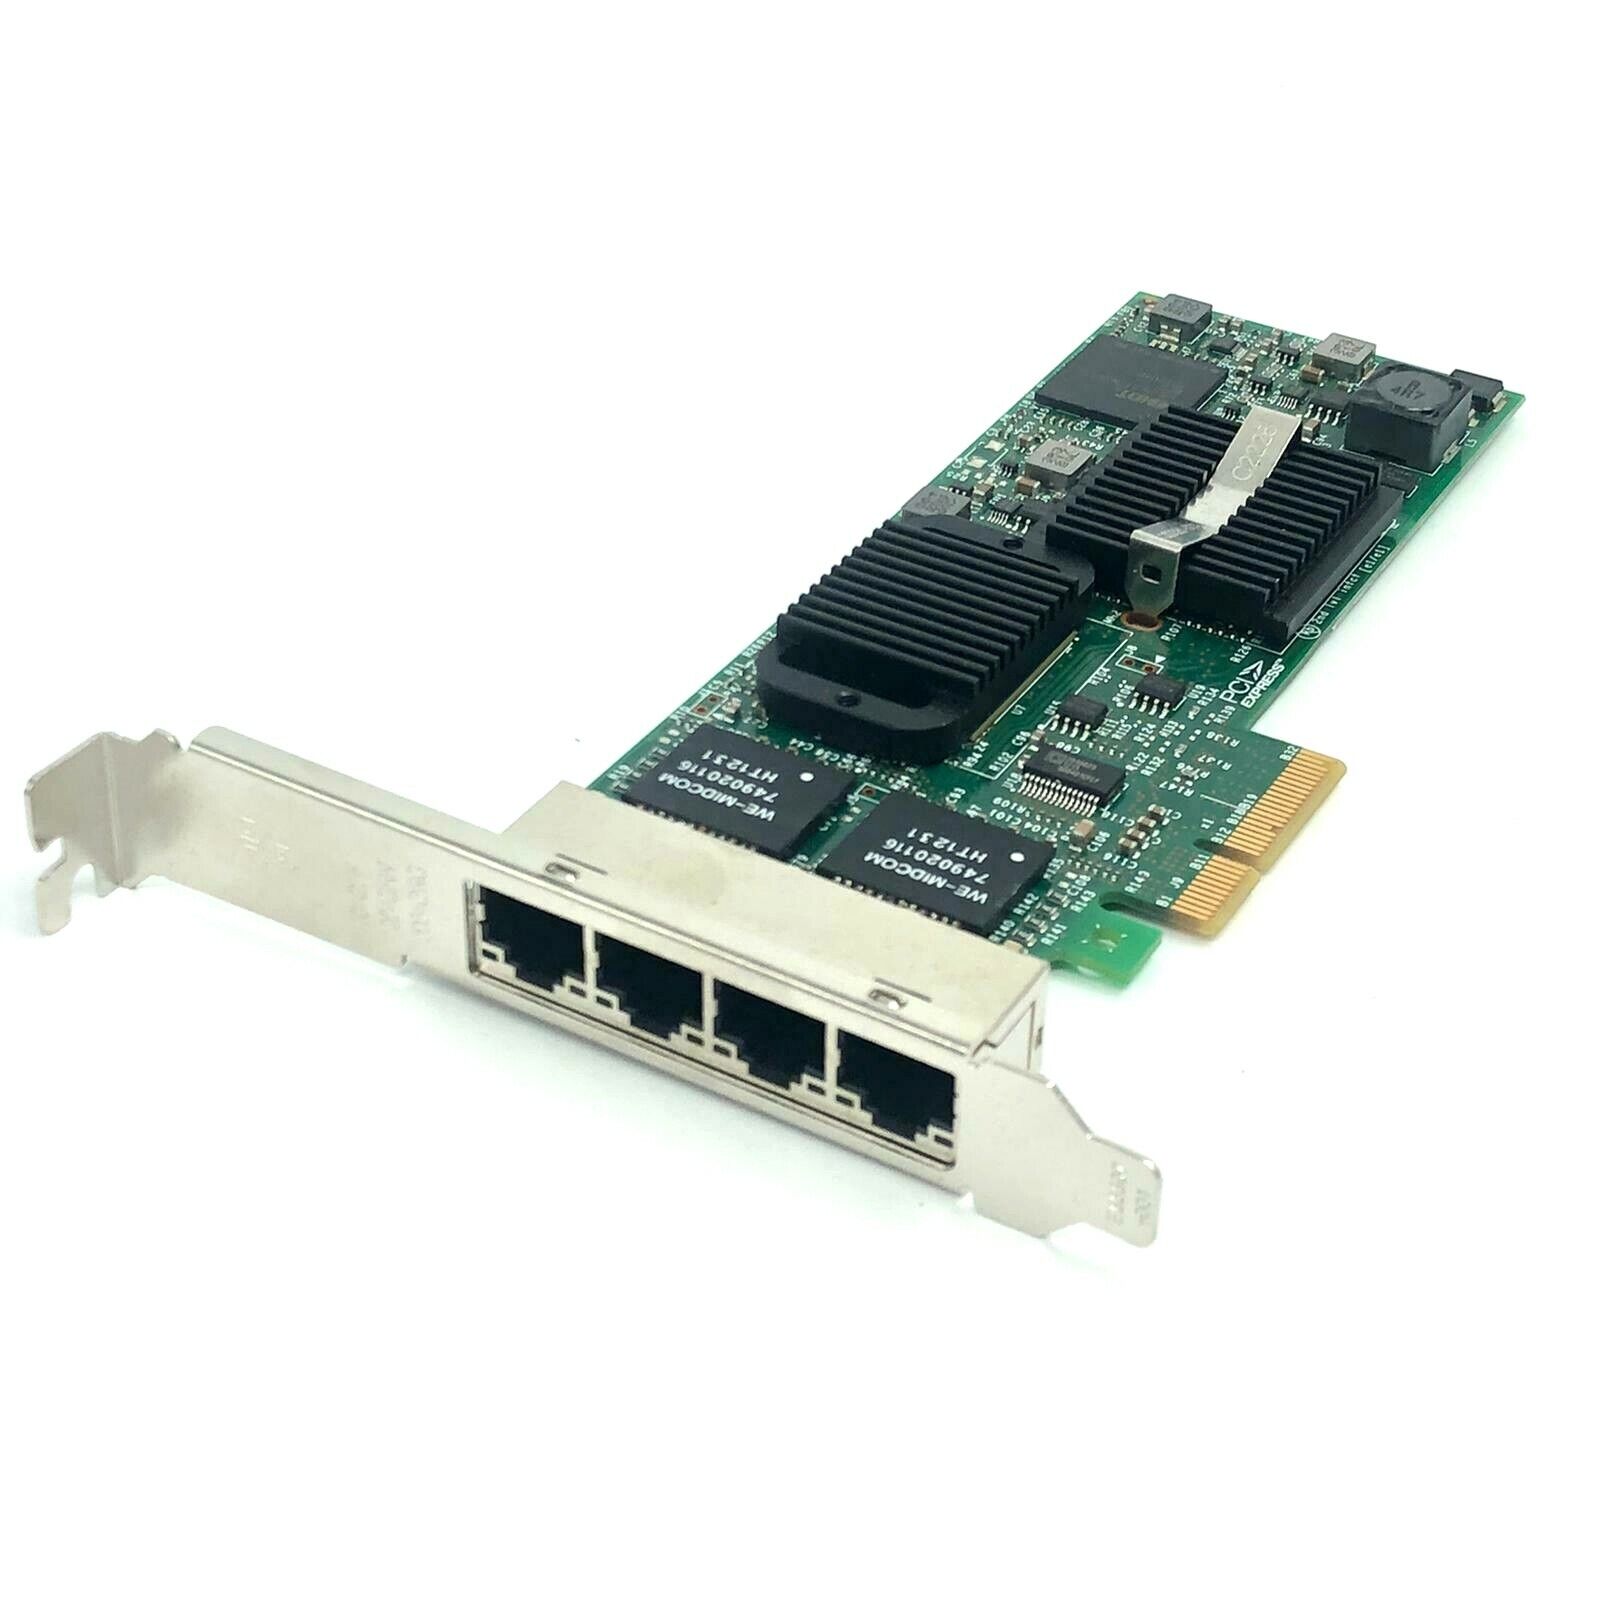 Intel OHM9JY Gigabit ET Multi-Port Server Adapter for Dell PowerEdge C2100